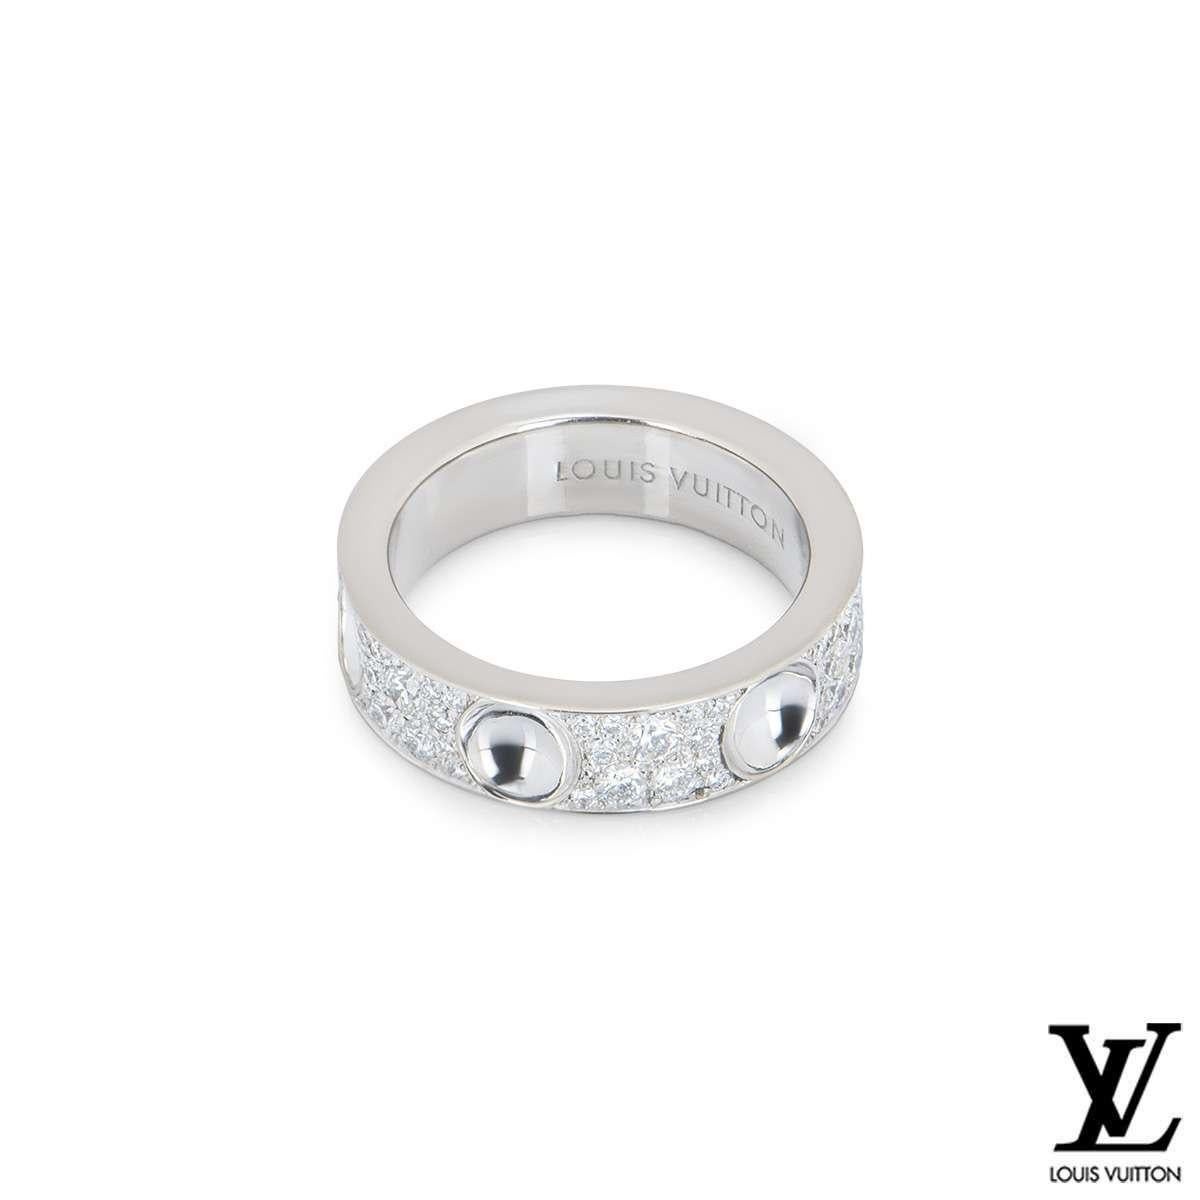 Ein atemberaubender, mit Diamanten besetzter Ring aus der Empreinte Collection'S von Louis Vuitton. Der Ring ist mit 6 umgekehrten Nietenmotiven versehen, von denen eines mit dem Louis Vuitton-Logo graviert ist. Zwischen den einzelnen Ohrsteckern